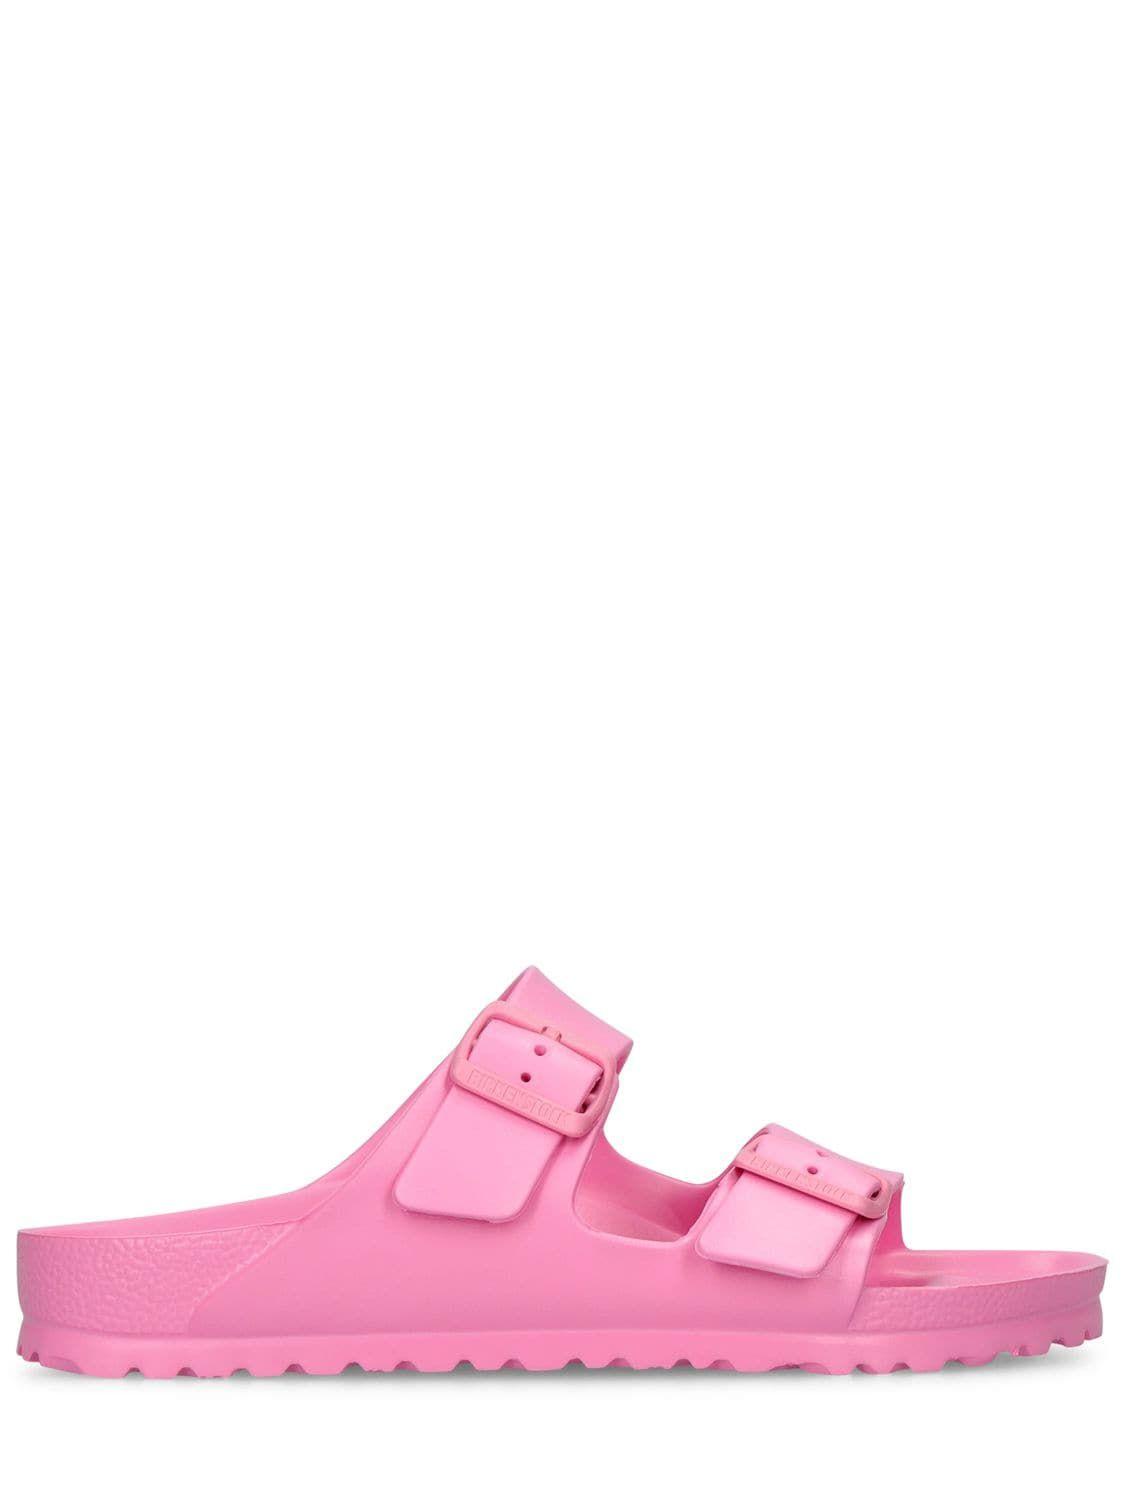 Birkenstock Arizona Eva Sandals in Pink | Lyst